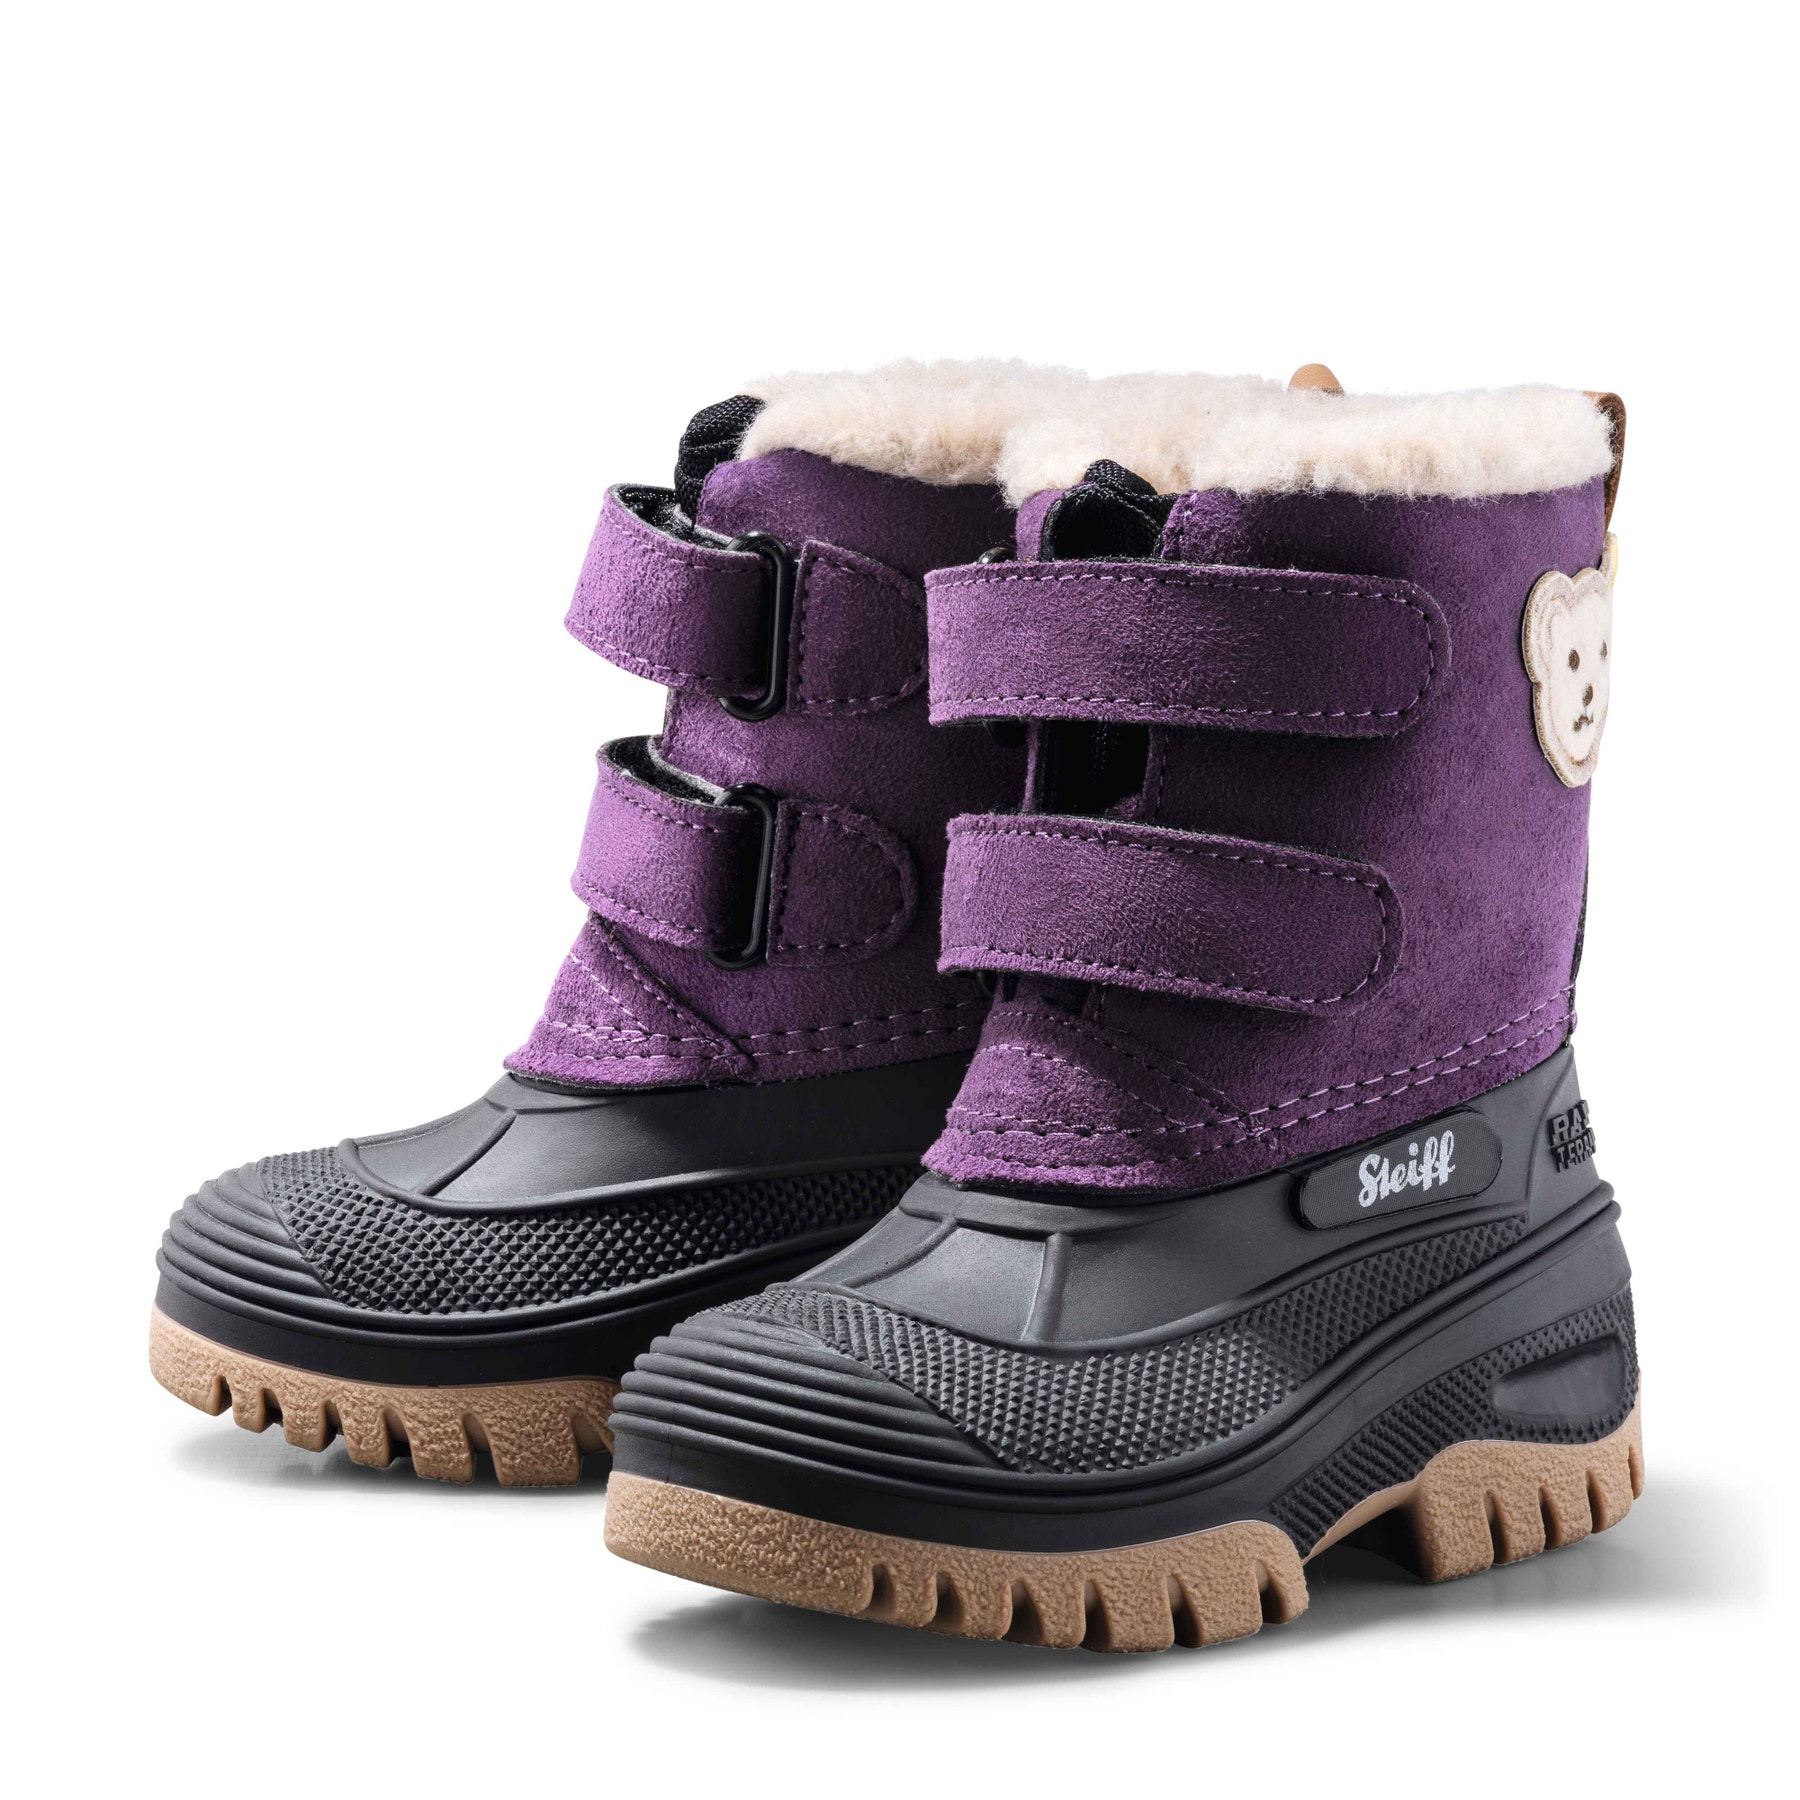 PAULI winter boot